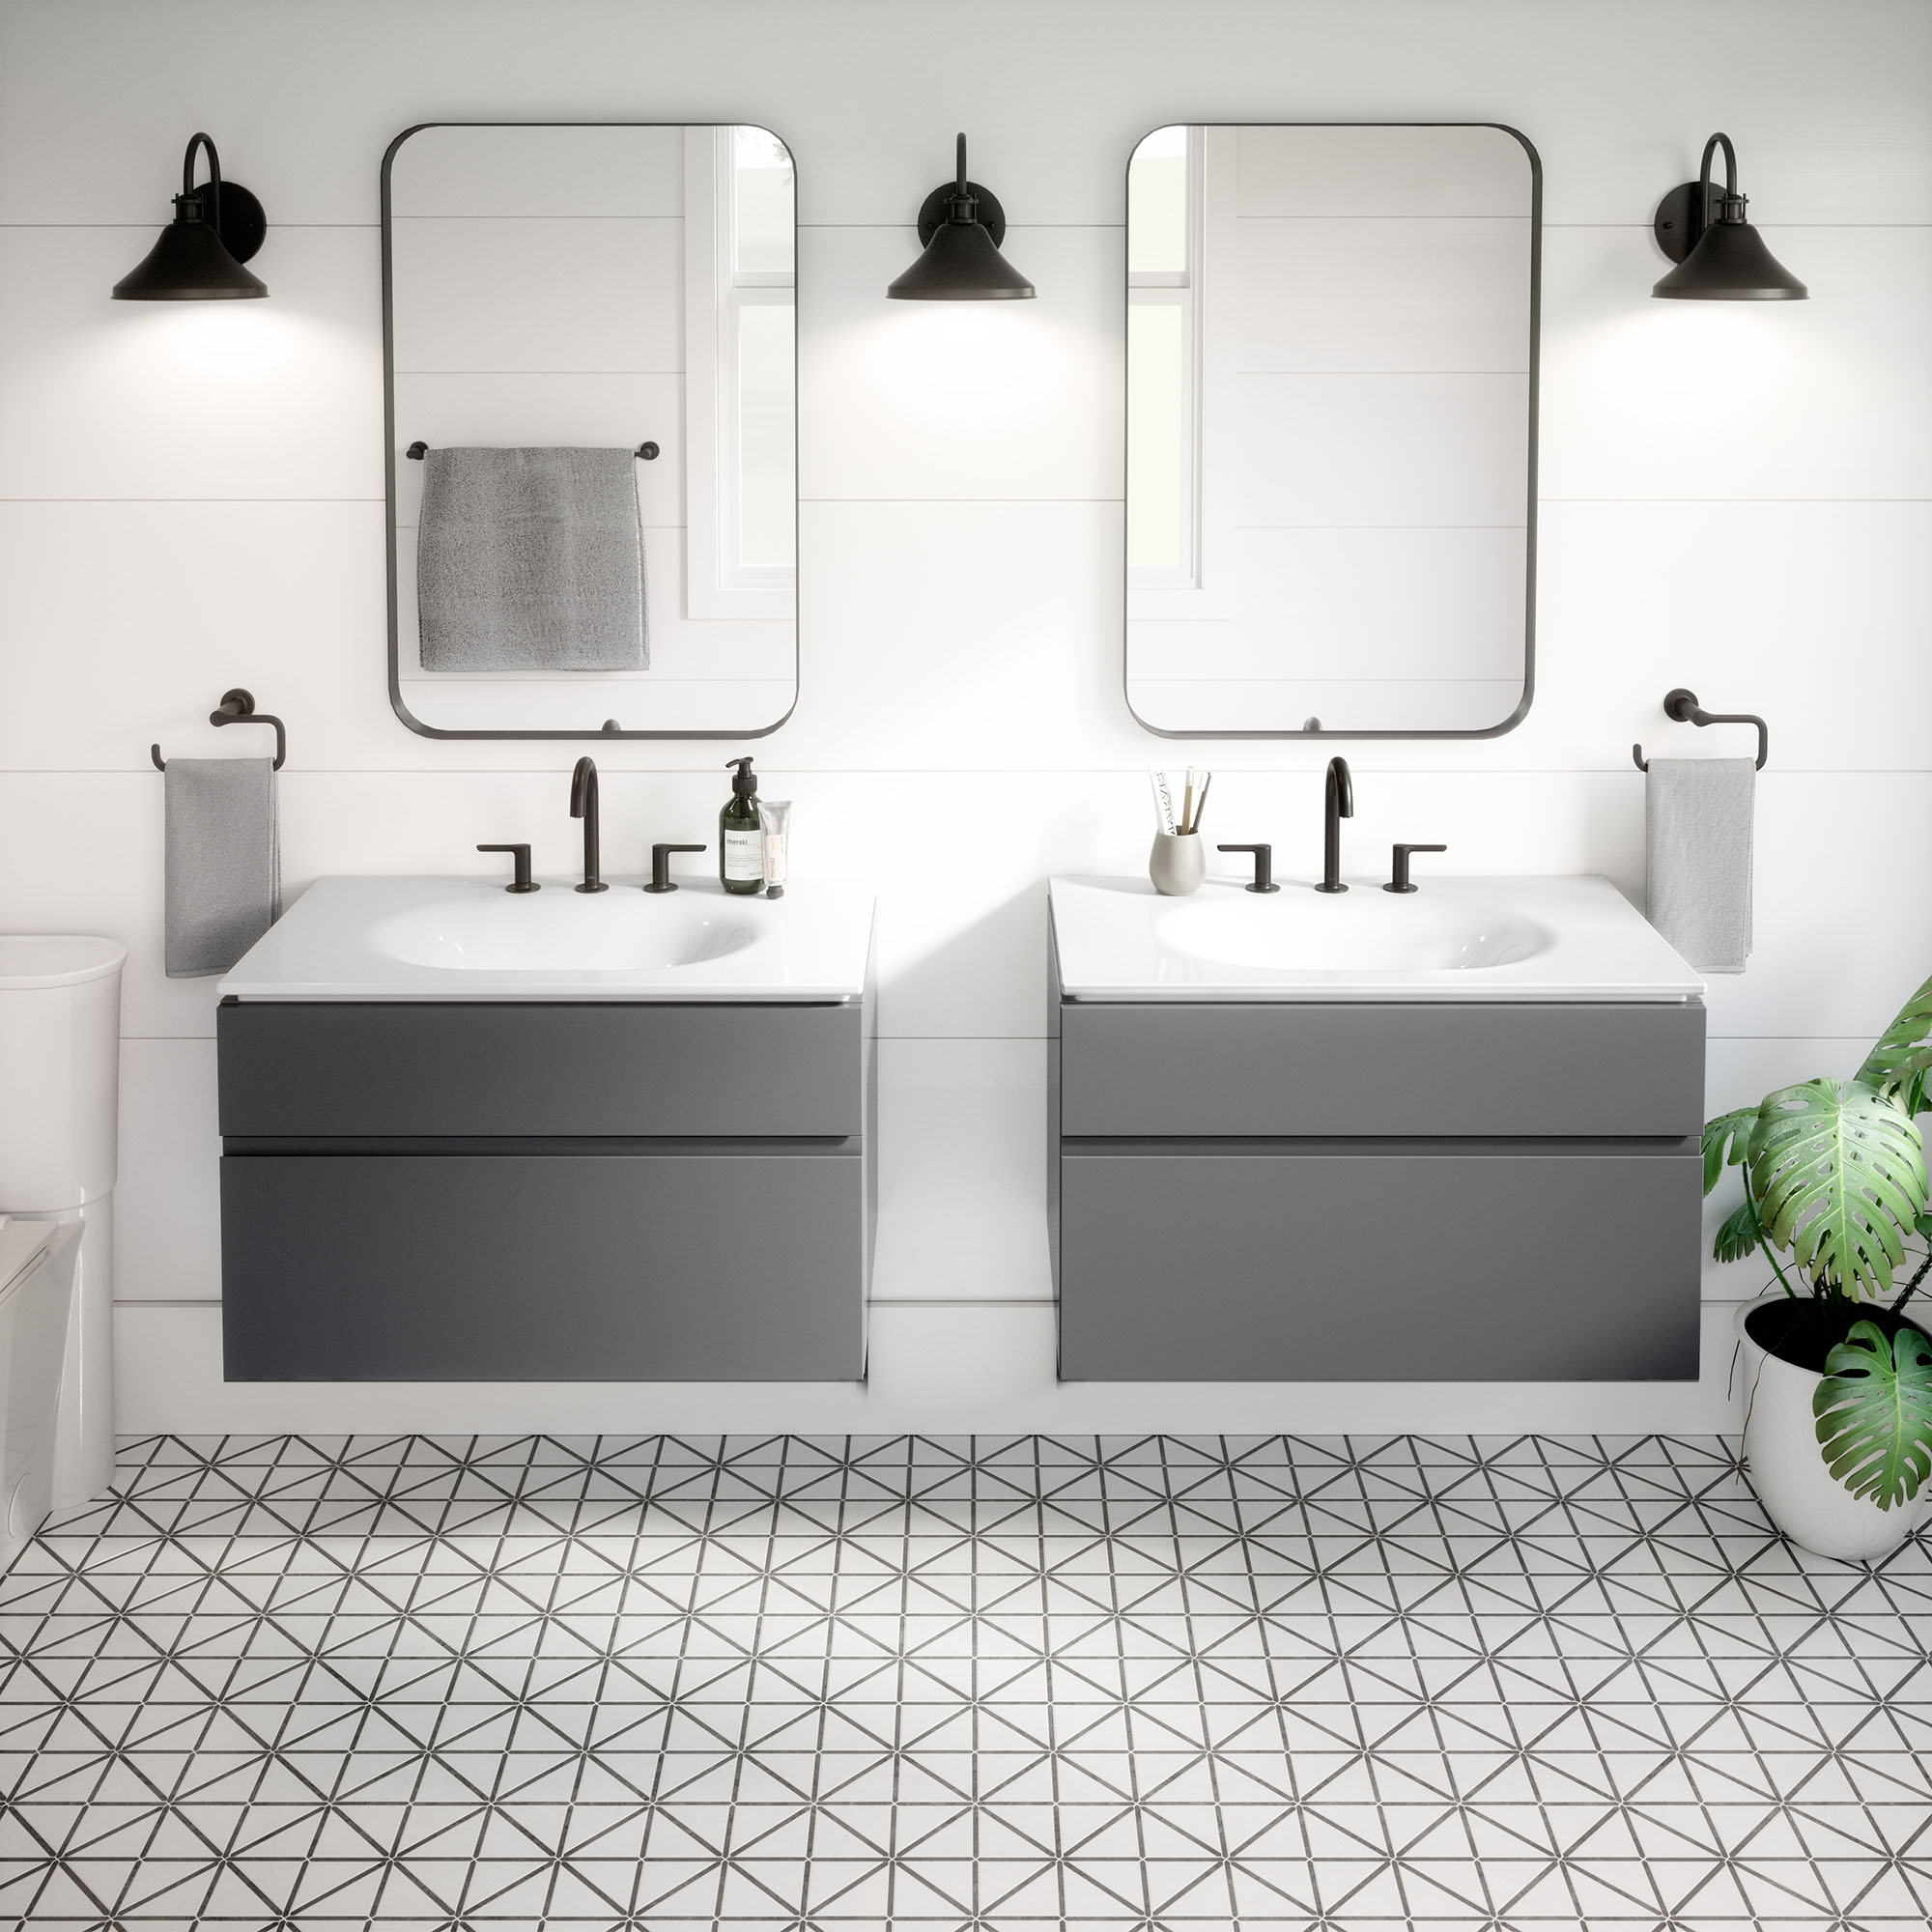 Studio® S - Robinet de salle de bain à 2 poignées espacées de 8 po 1,2 gpm/4,5 L/min avec poignées à levier